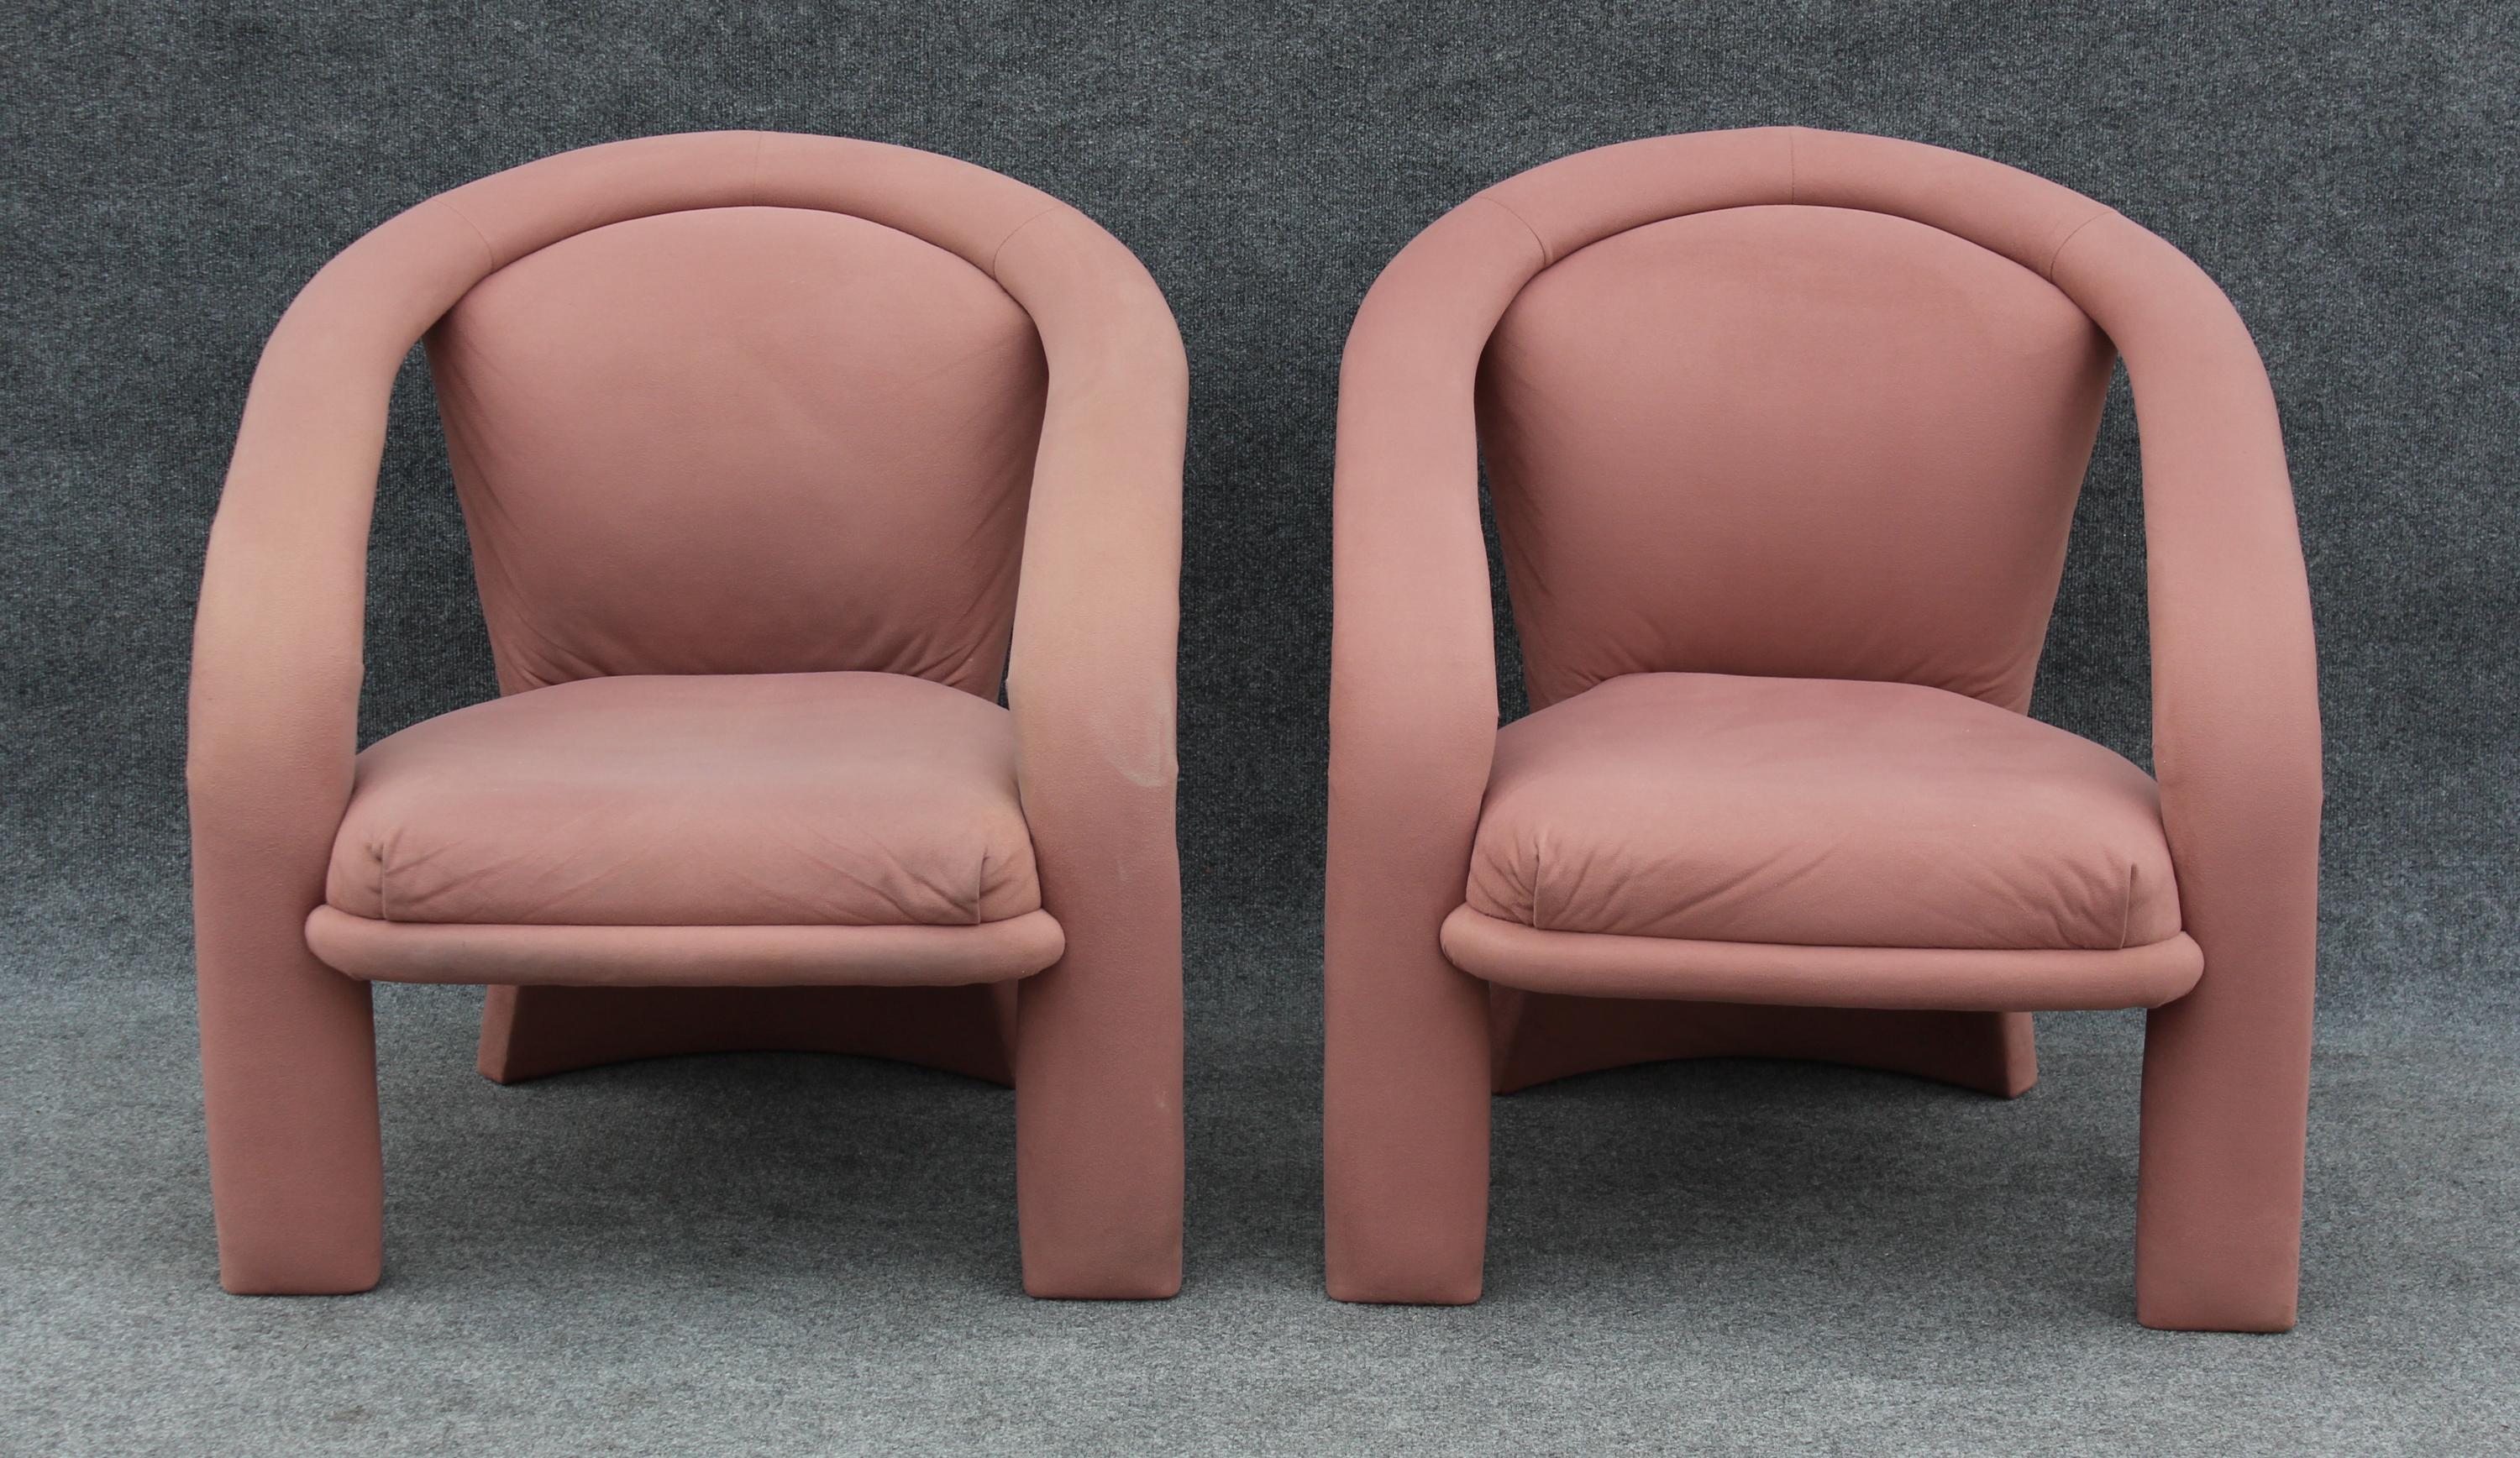 Conçues et fabriquées dans les années 1990 par Marge Carson, ces chaises longues capturent parfaitement l'essence du design des années 90. Dramatiques mais élégants et sculpturaux, ils se caractérisent par un langage stylistique tout en courbes et